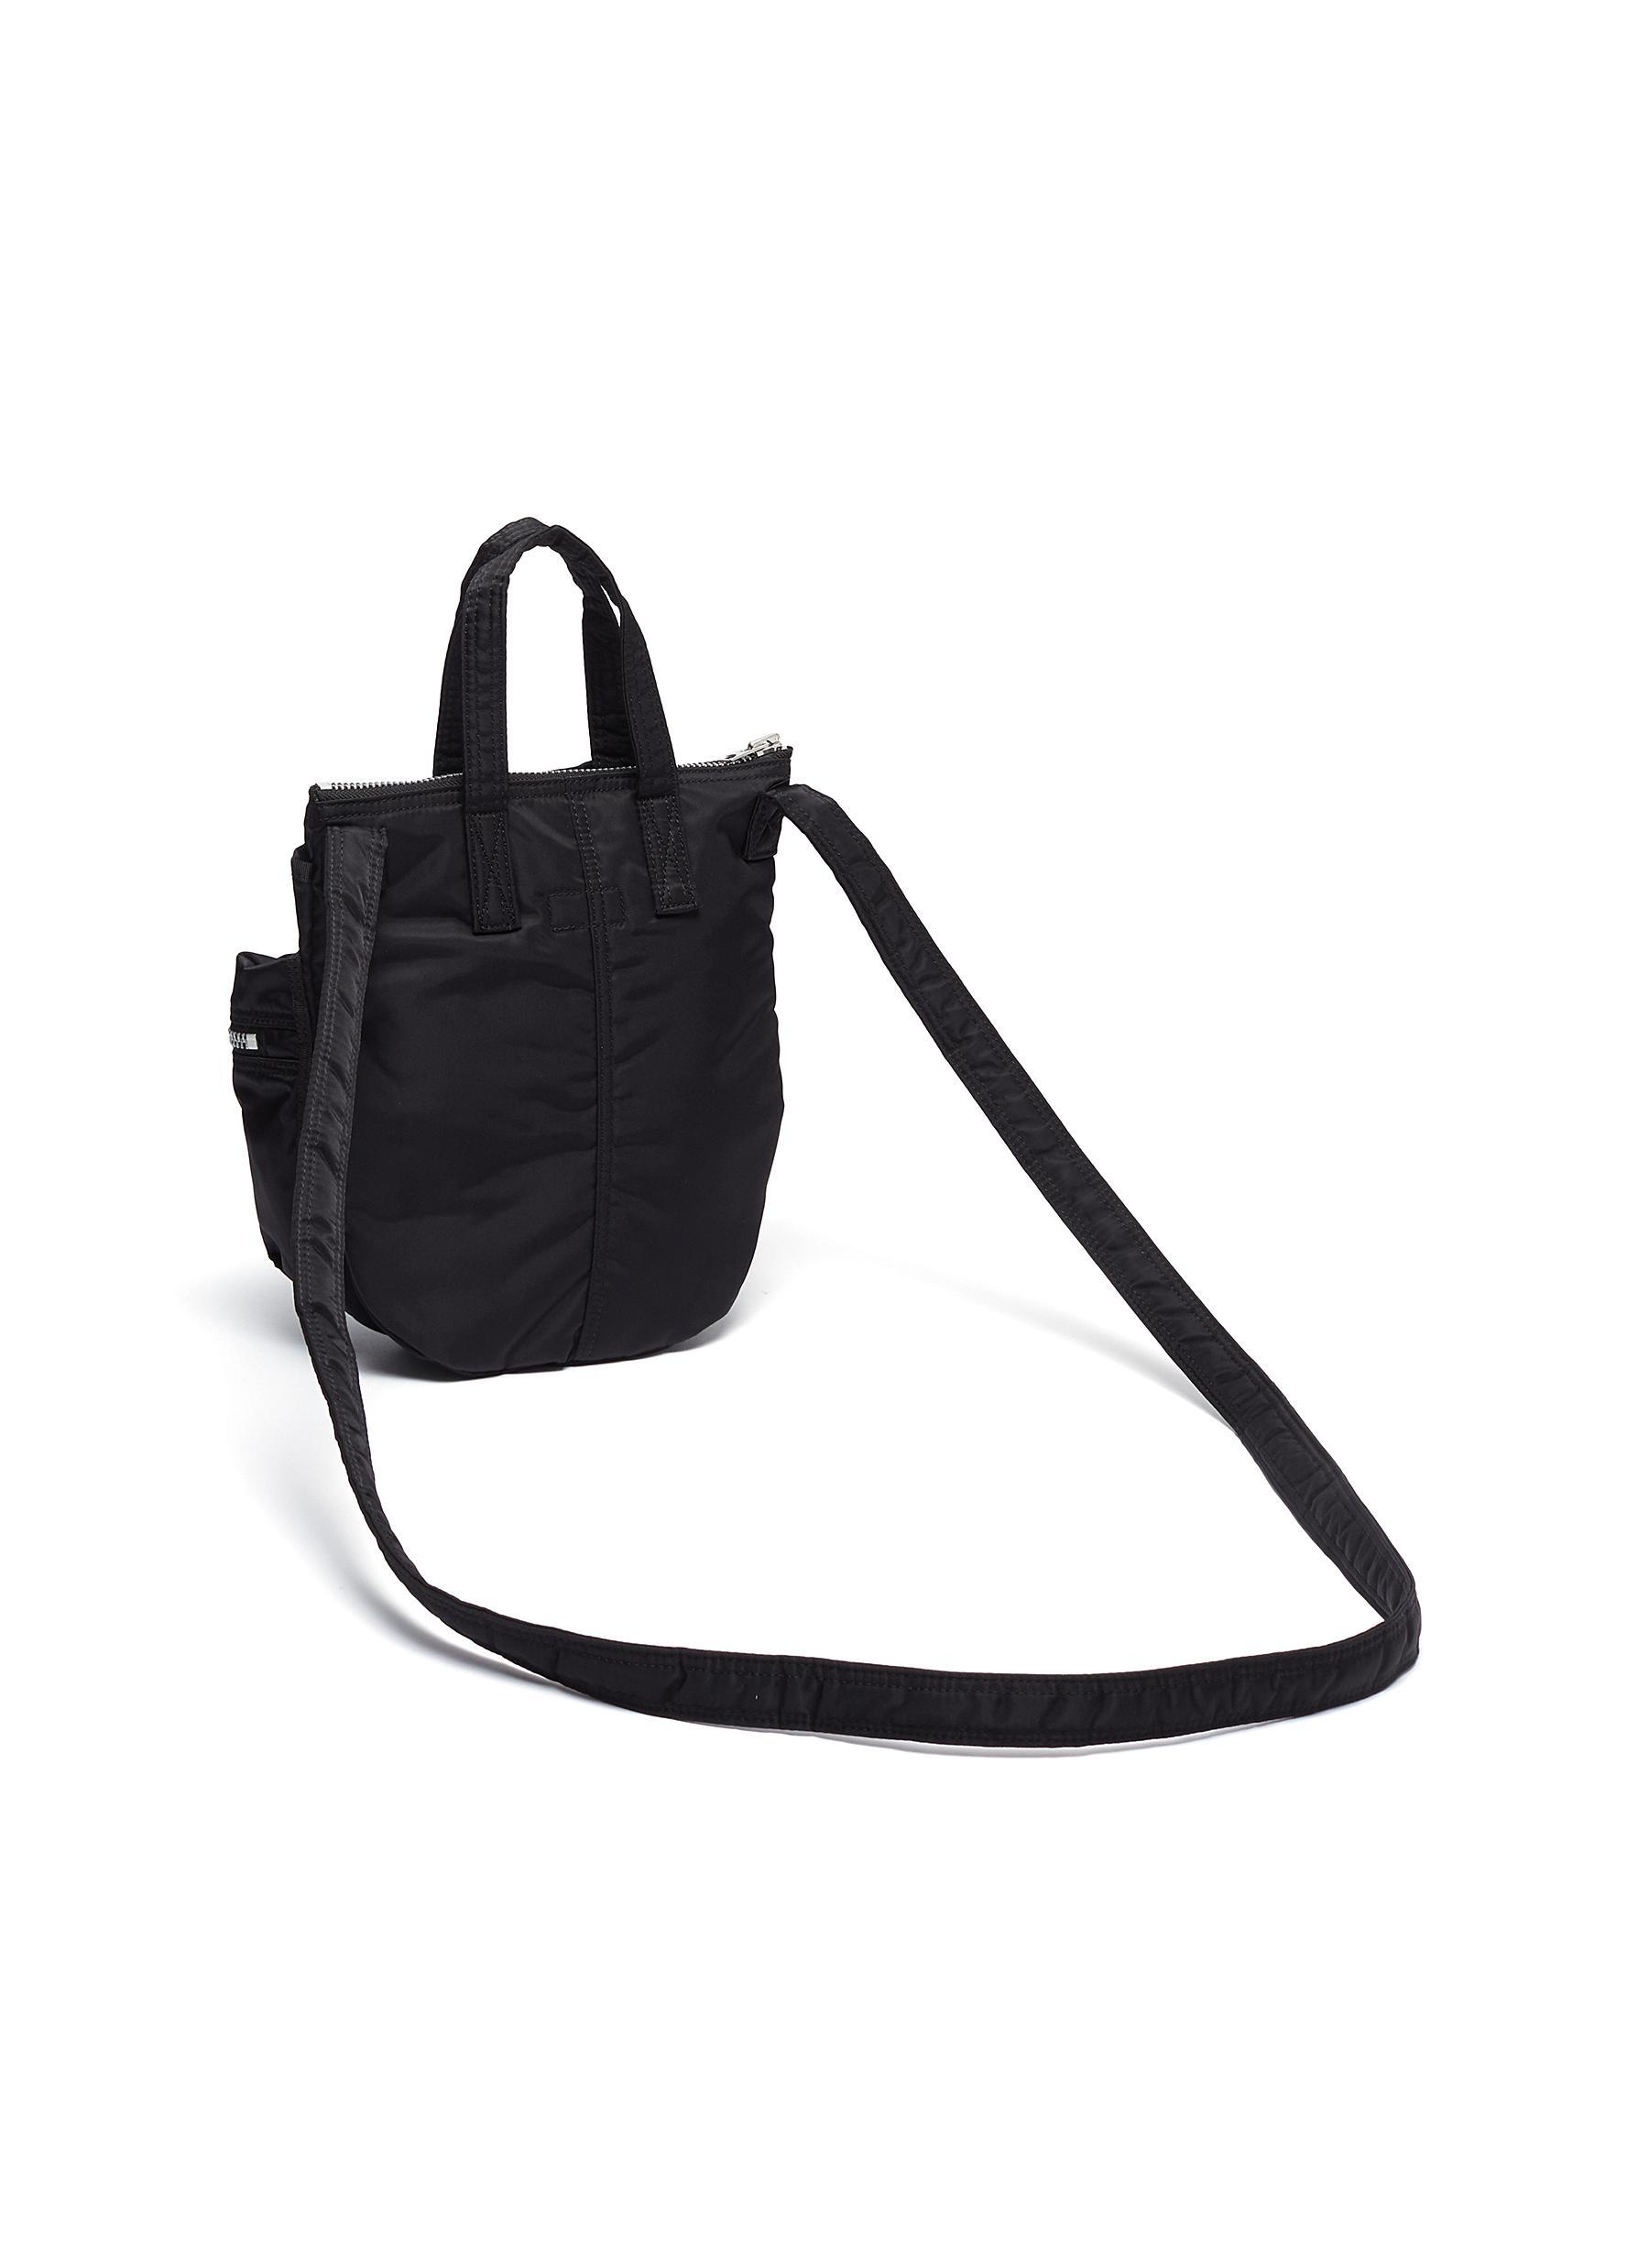 Sacai X Porter Yoshida & Co. Zip Pocket Nylon Crossbody Bag in 